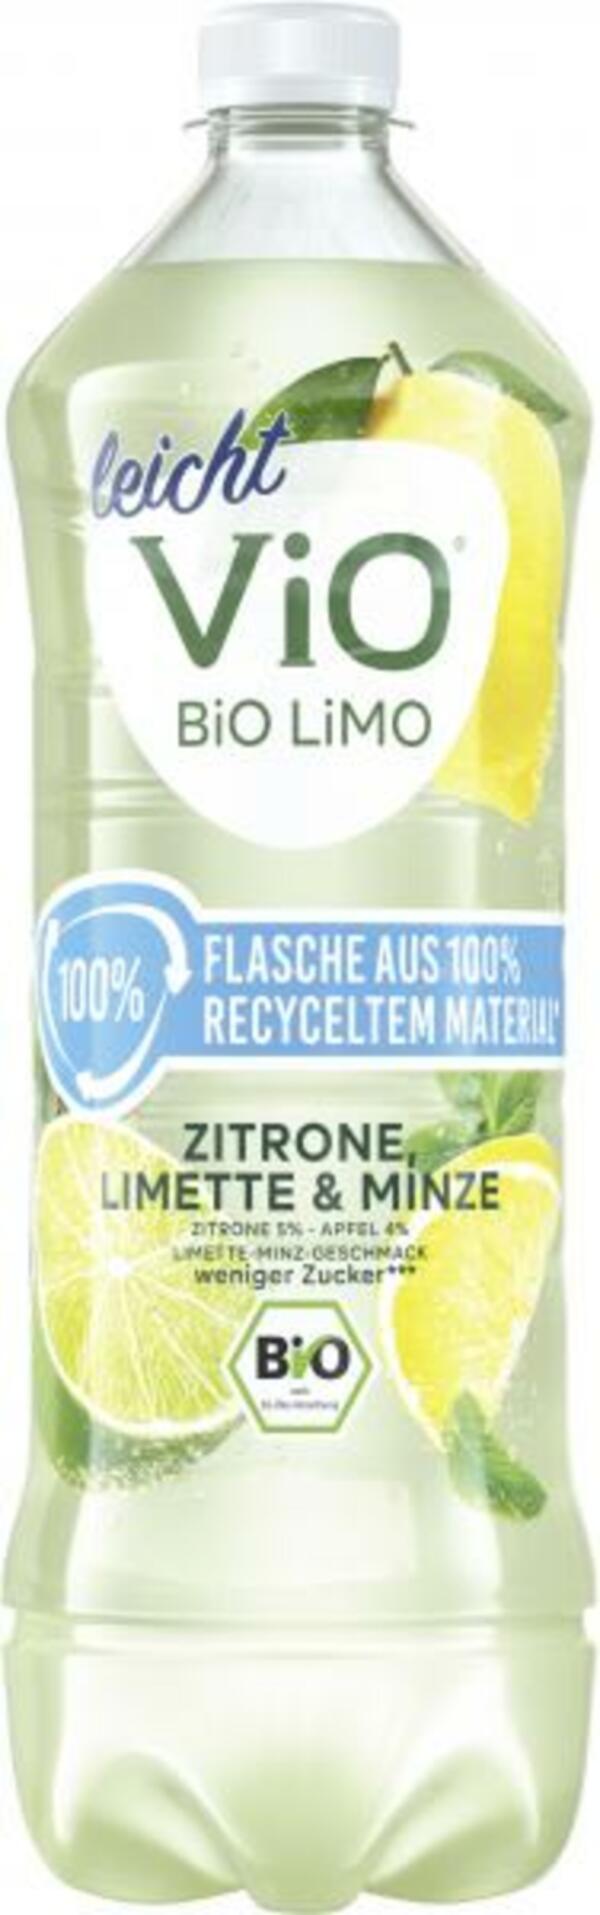 Bild 1 von Vio Bio Limo Leicht Zitrone-Limette-Minze (Einweg)